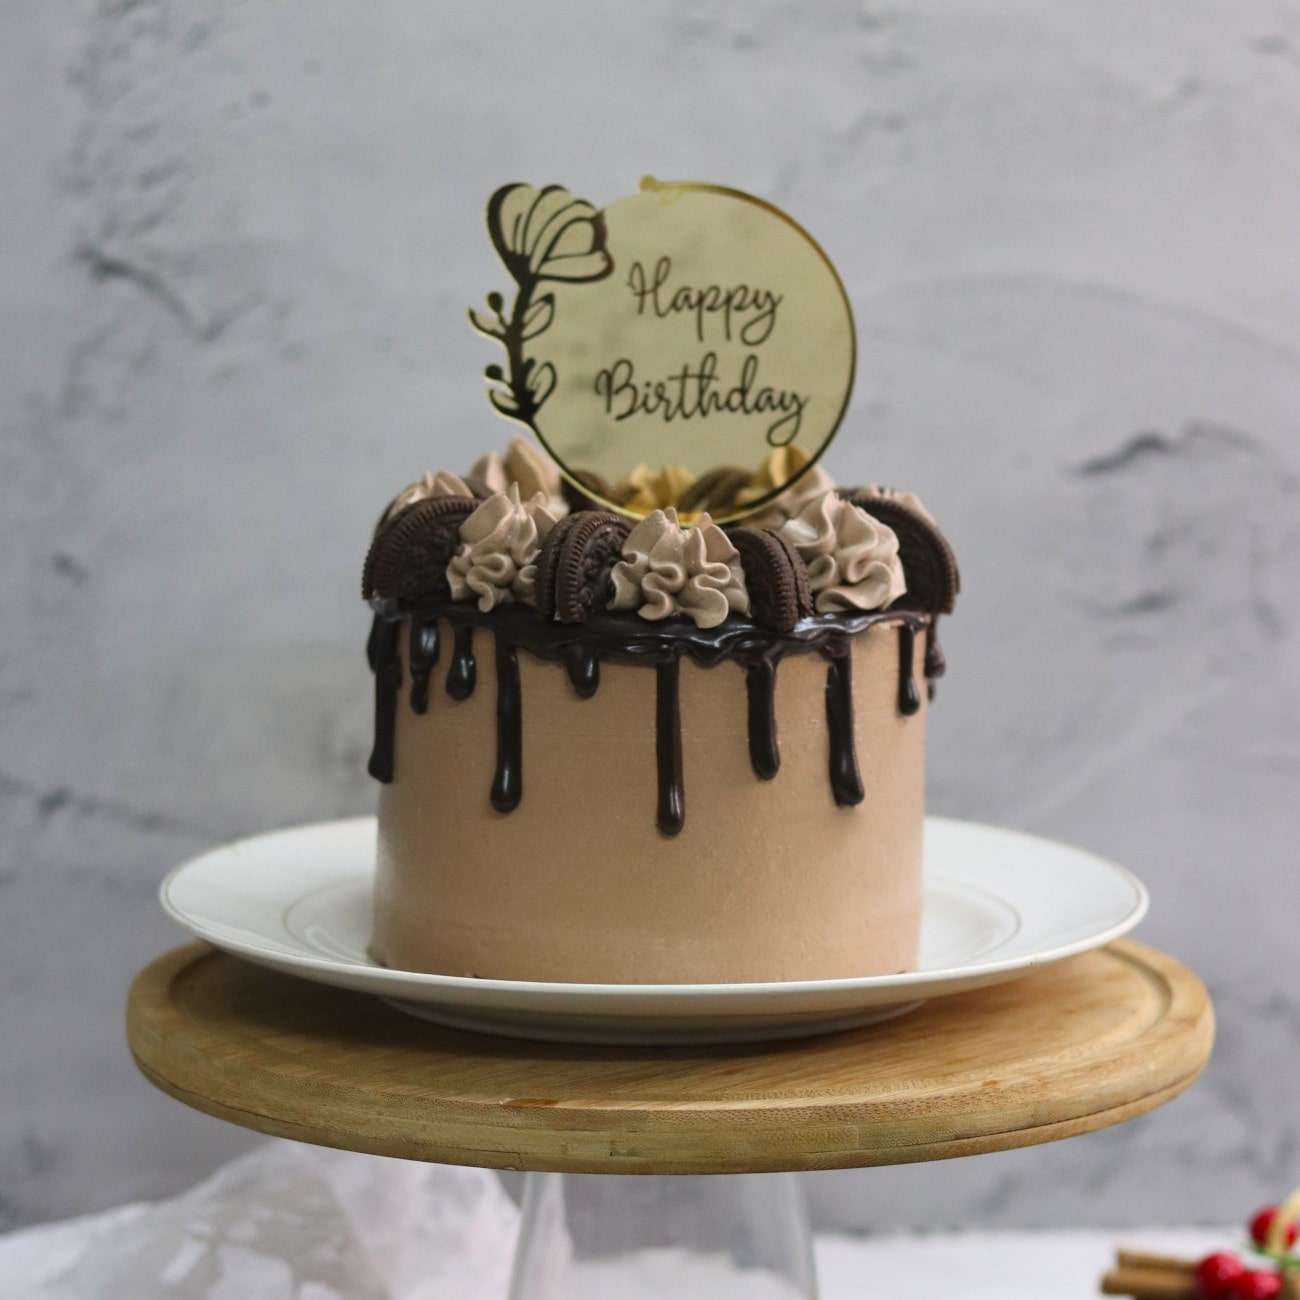 Chocolate Oreo Birthday Cake – lovinghomemade